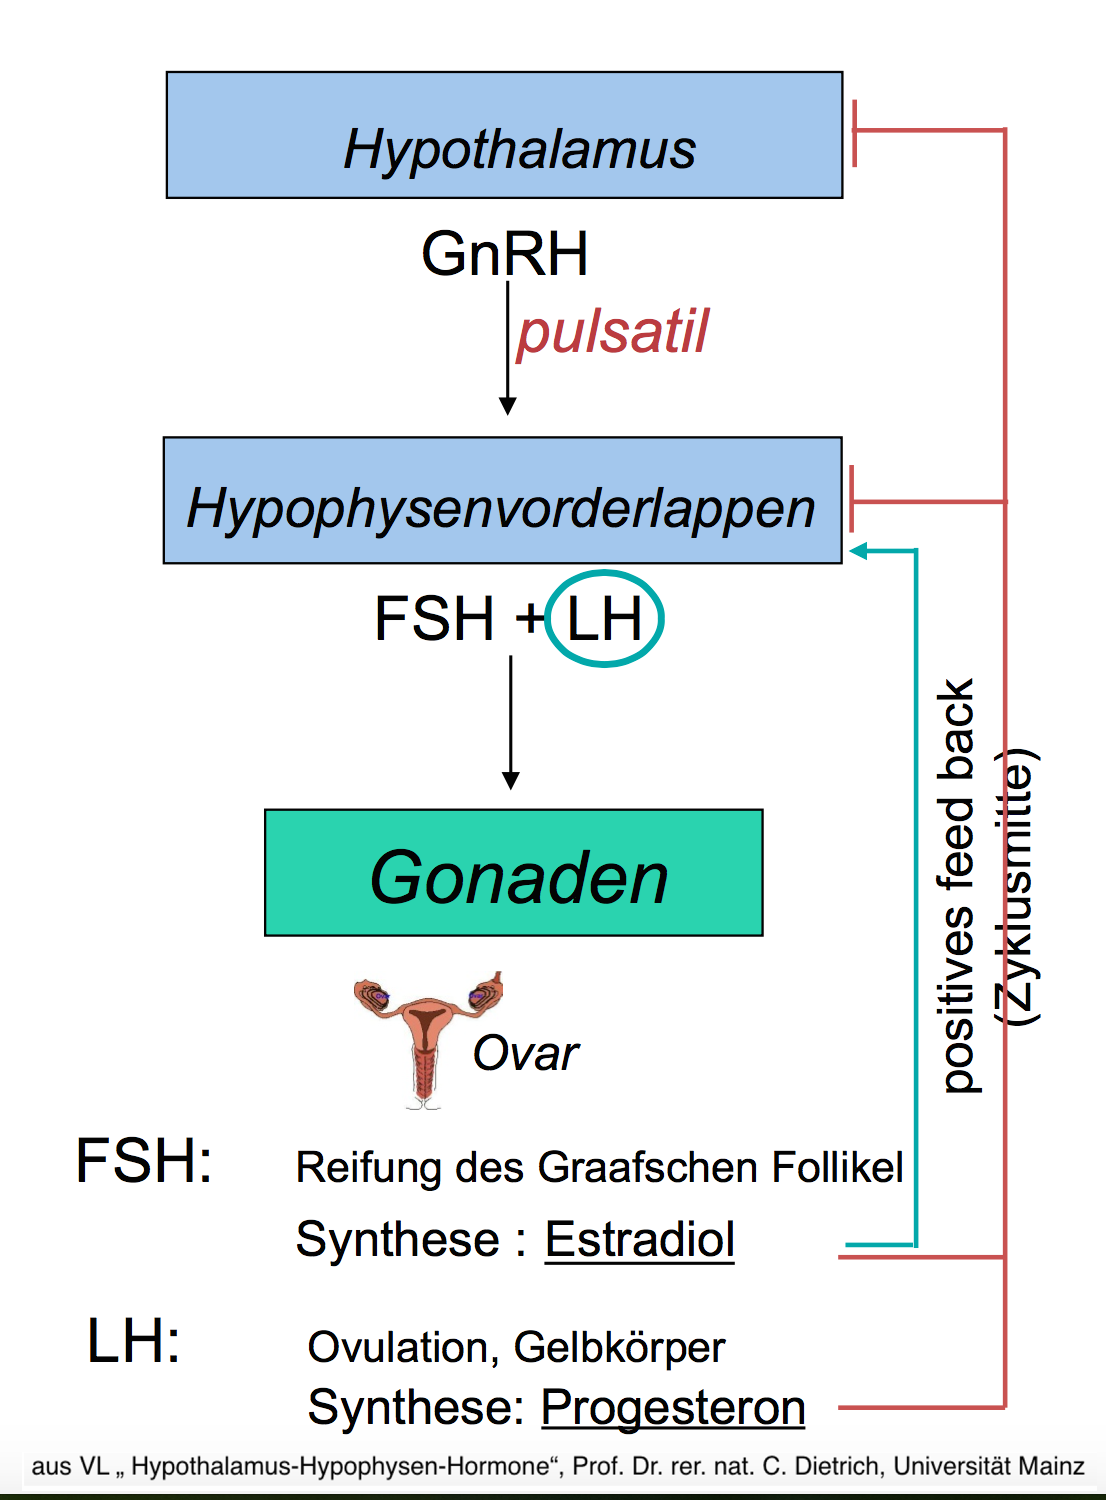 Sexualhormone Regelkreis Der Hypothalamus schüttet pulsatil GnRH aus (etwa alle 2h), was die Freisetzung von FSH und LH aus dem Hypophysenvorderlappen stimuliert. Diese wirken auf die Gonaden.